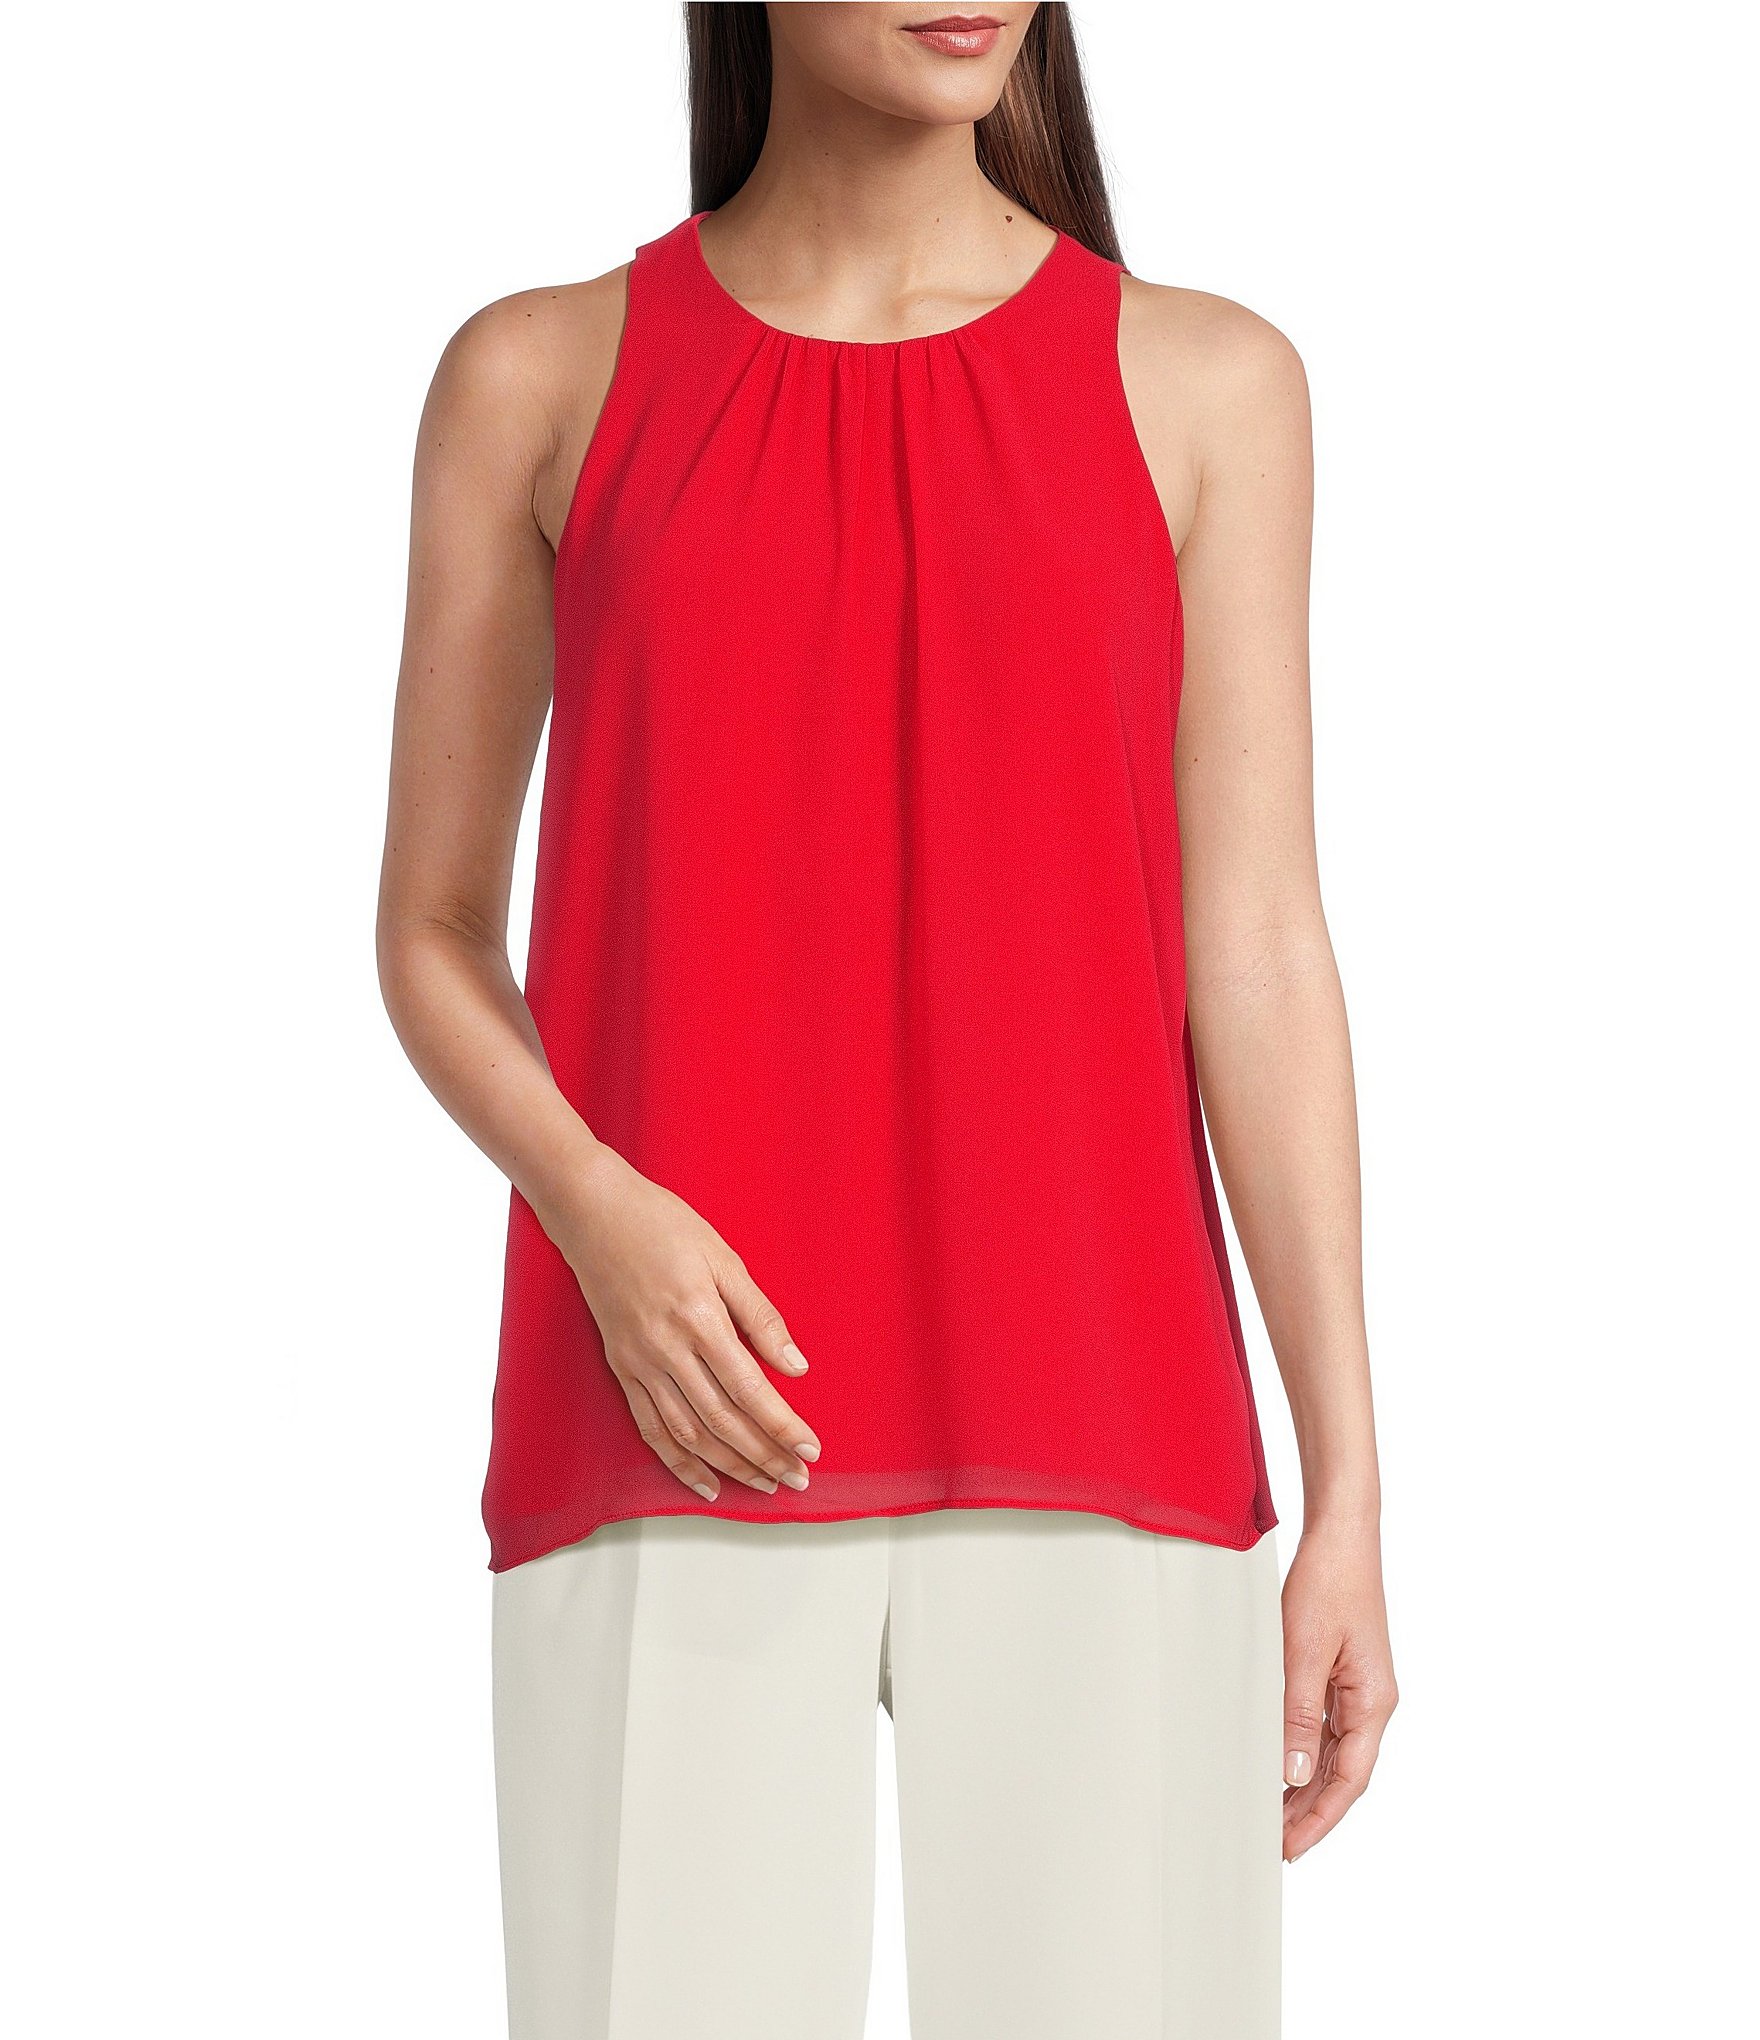 sleeveless blouse: Women's Tops & Tops